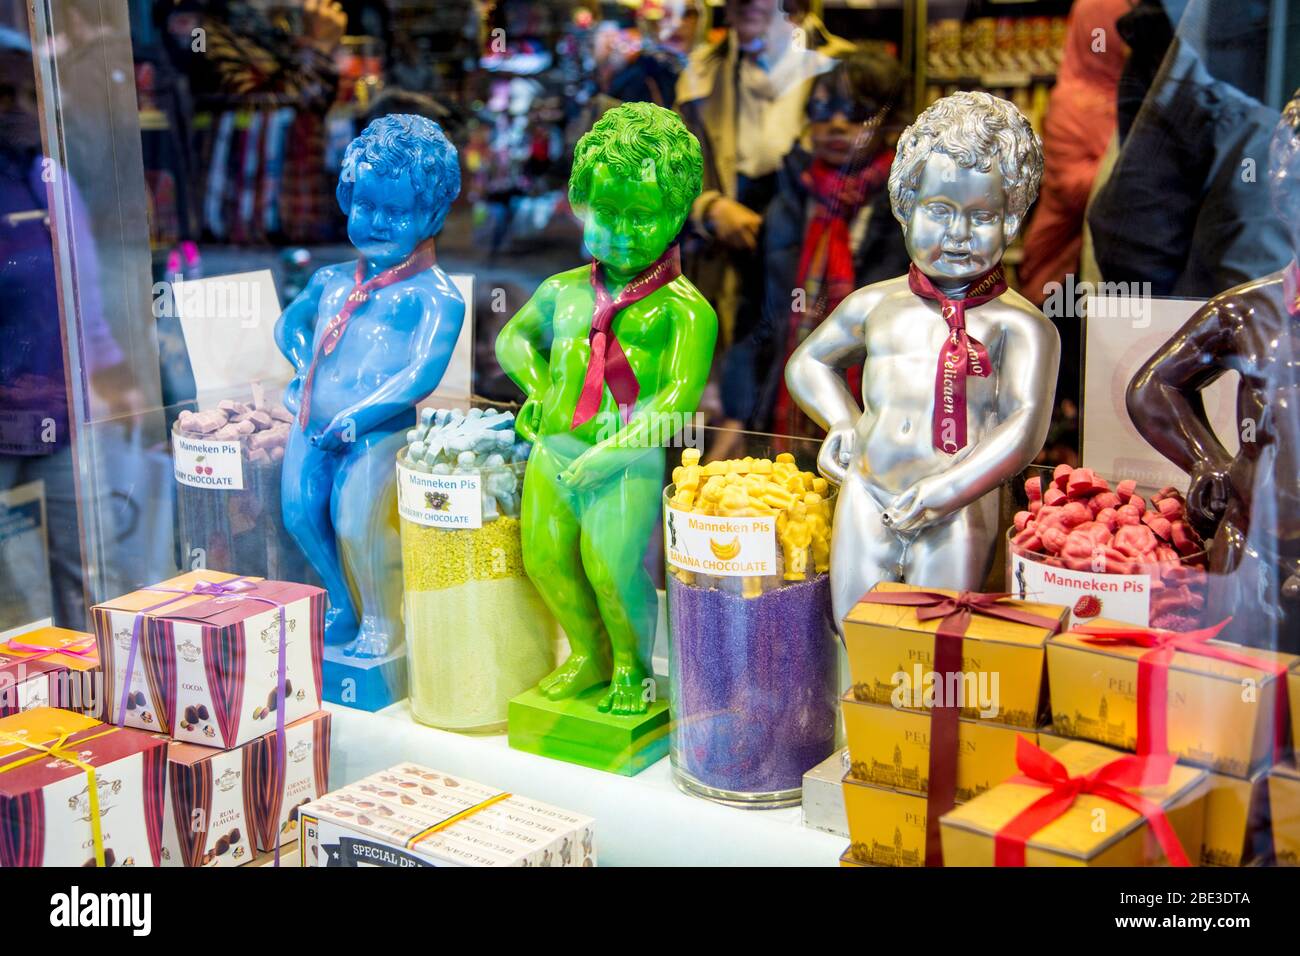 Reproductions colorées de la sculpture Manneken Pis dans une vitrine de magasins de bonbons, Bruxelles, Belgique Banque D'Images